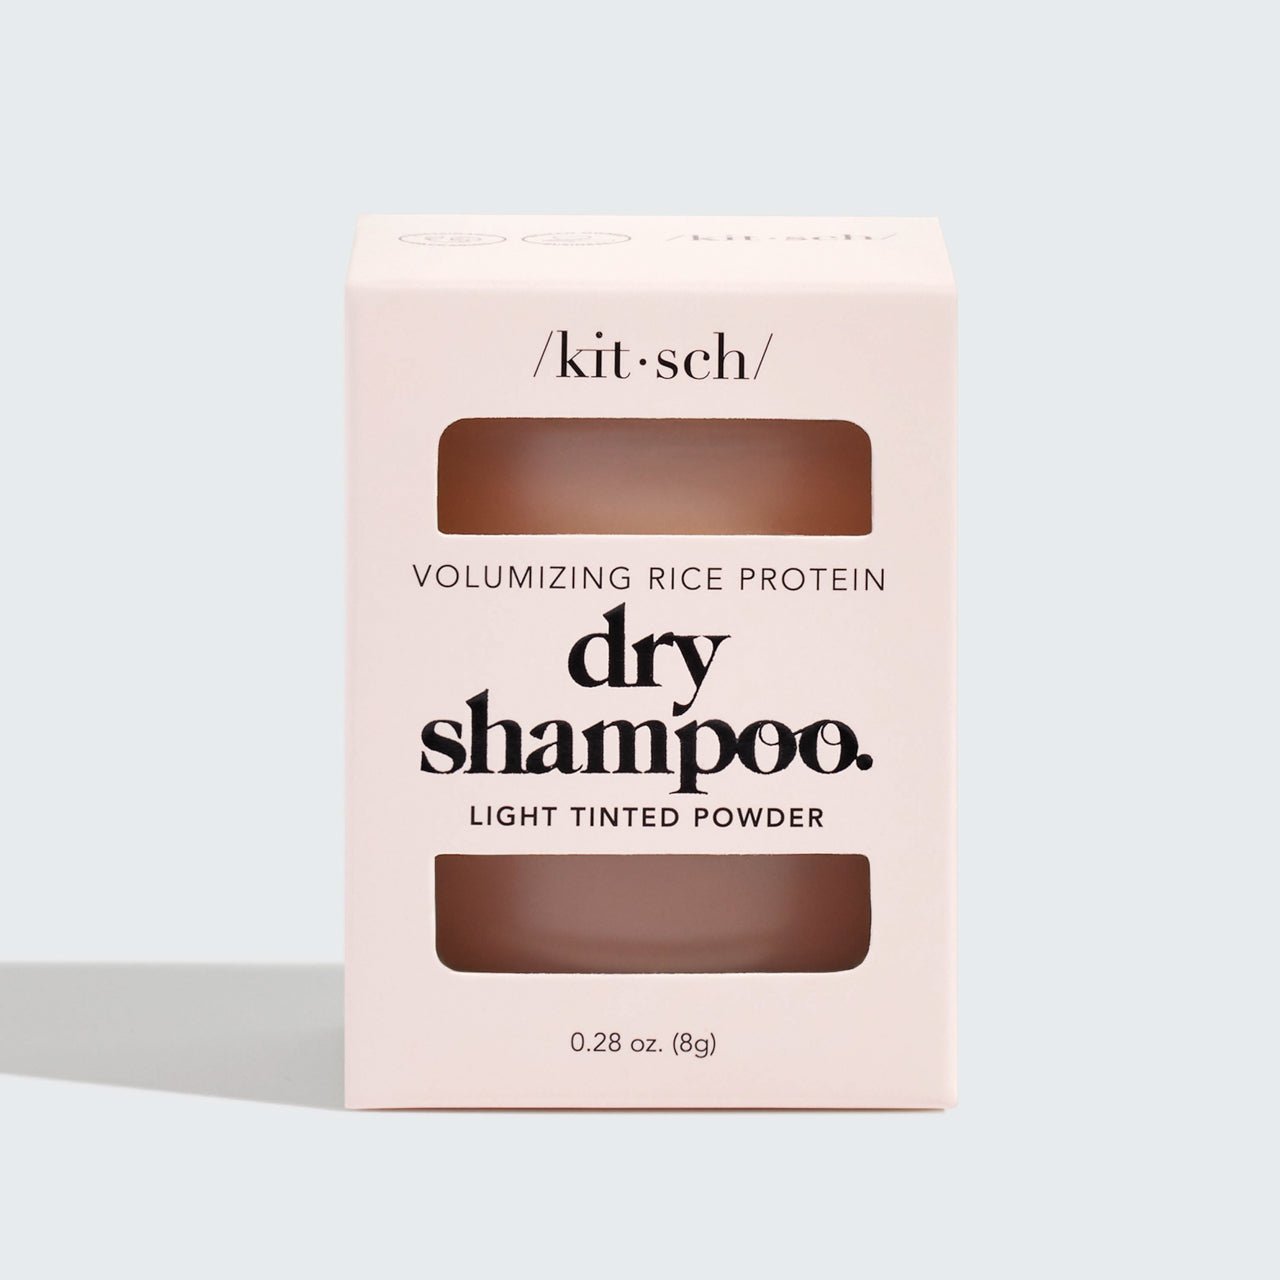 Shampoo secco volumizzante alle proteine del riso - Polvere leggera colorata